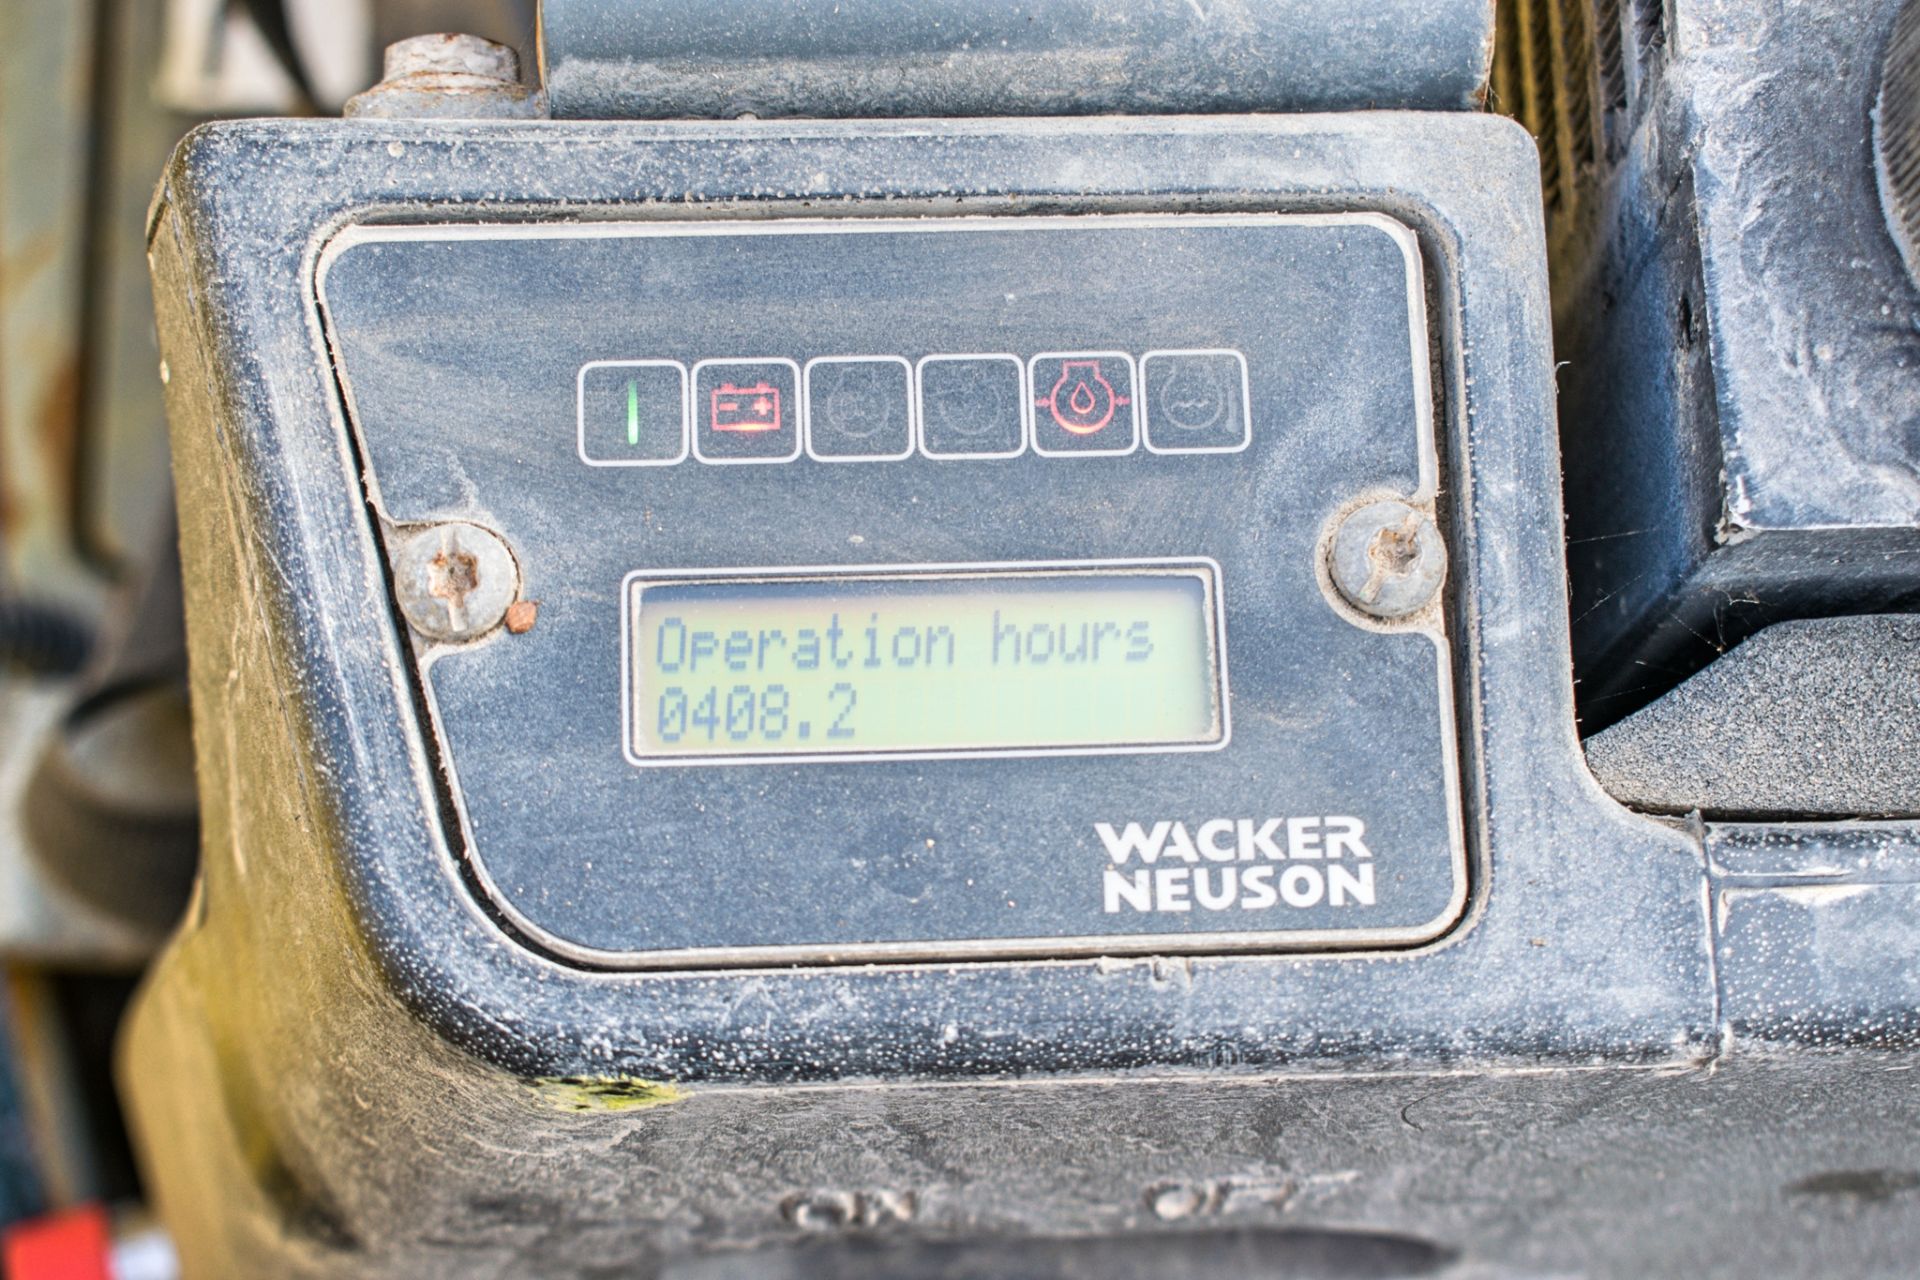 Wacker Neuson DPU130 diesel driven remote compactor plate c/w remote control A763725 - Image 5 of 5